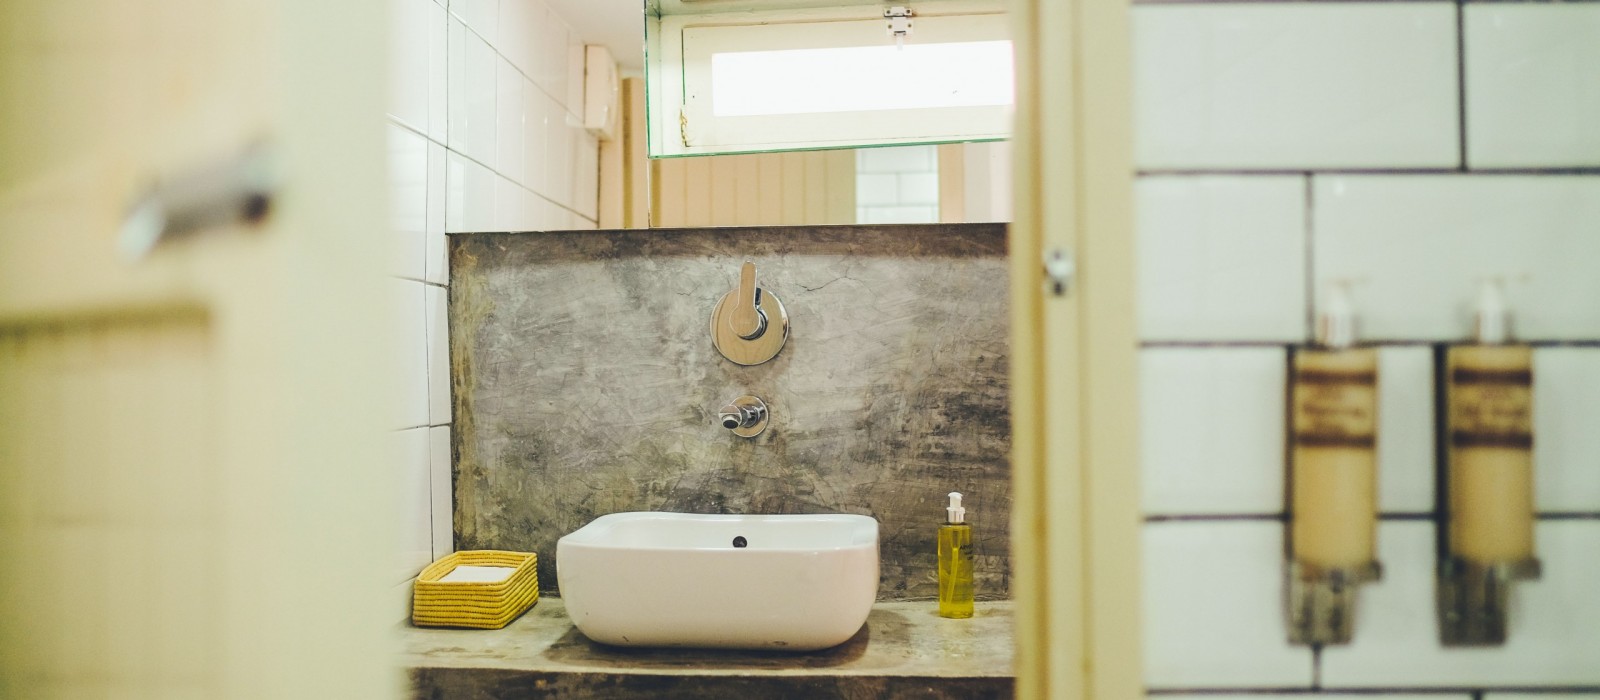 Taghazout Villa - Bathroom sink